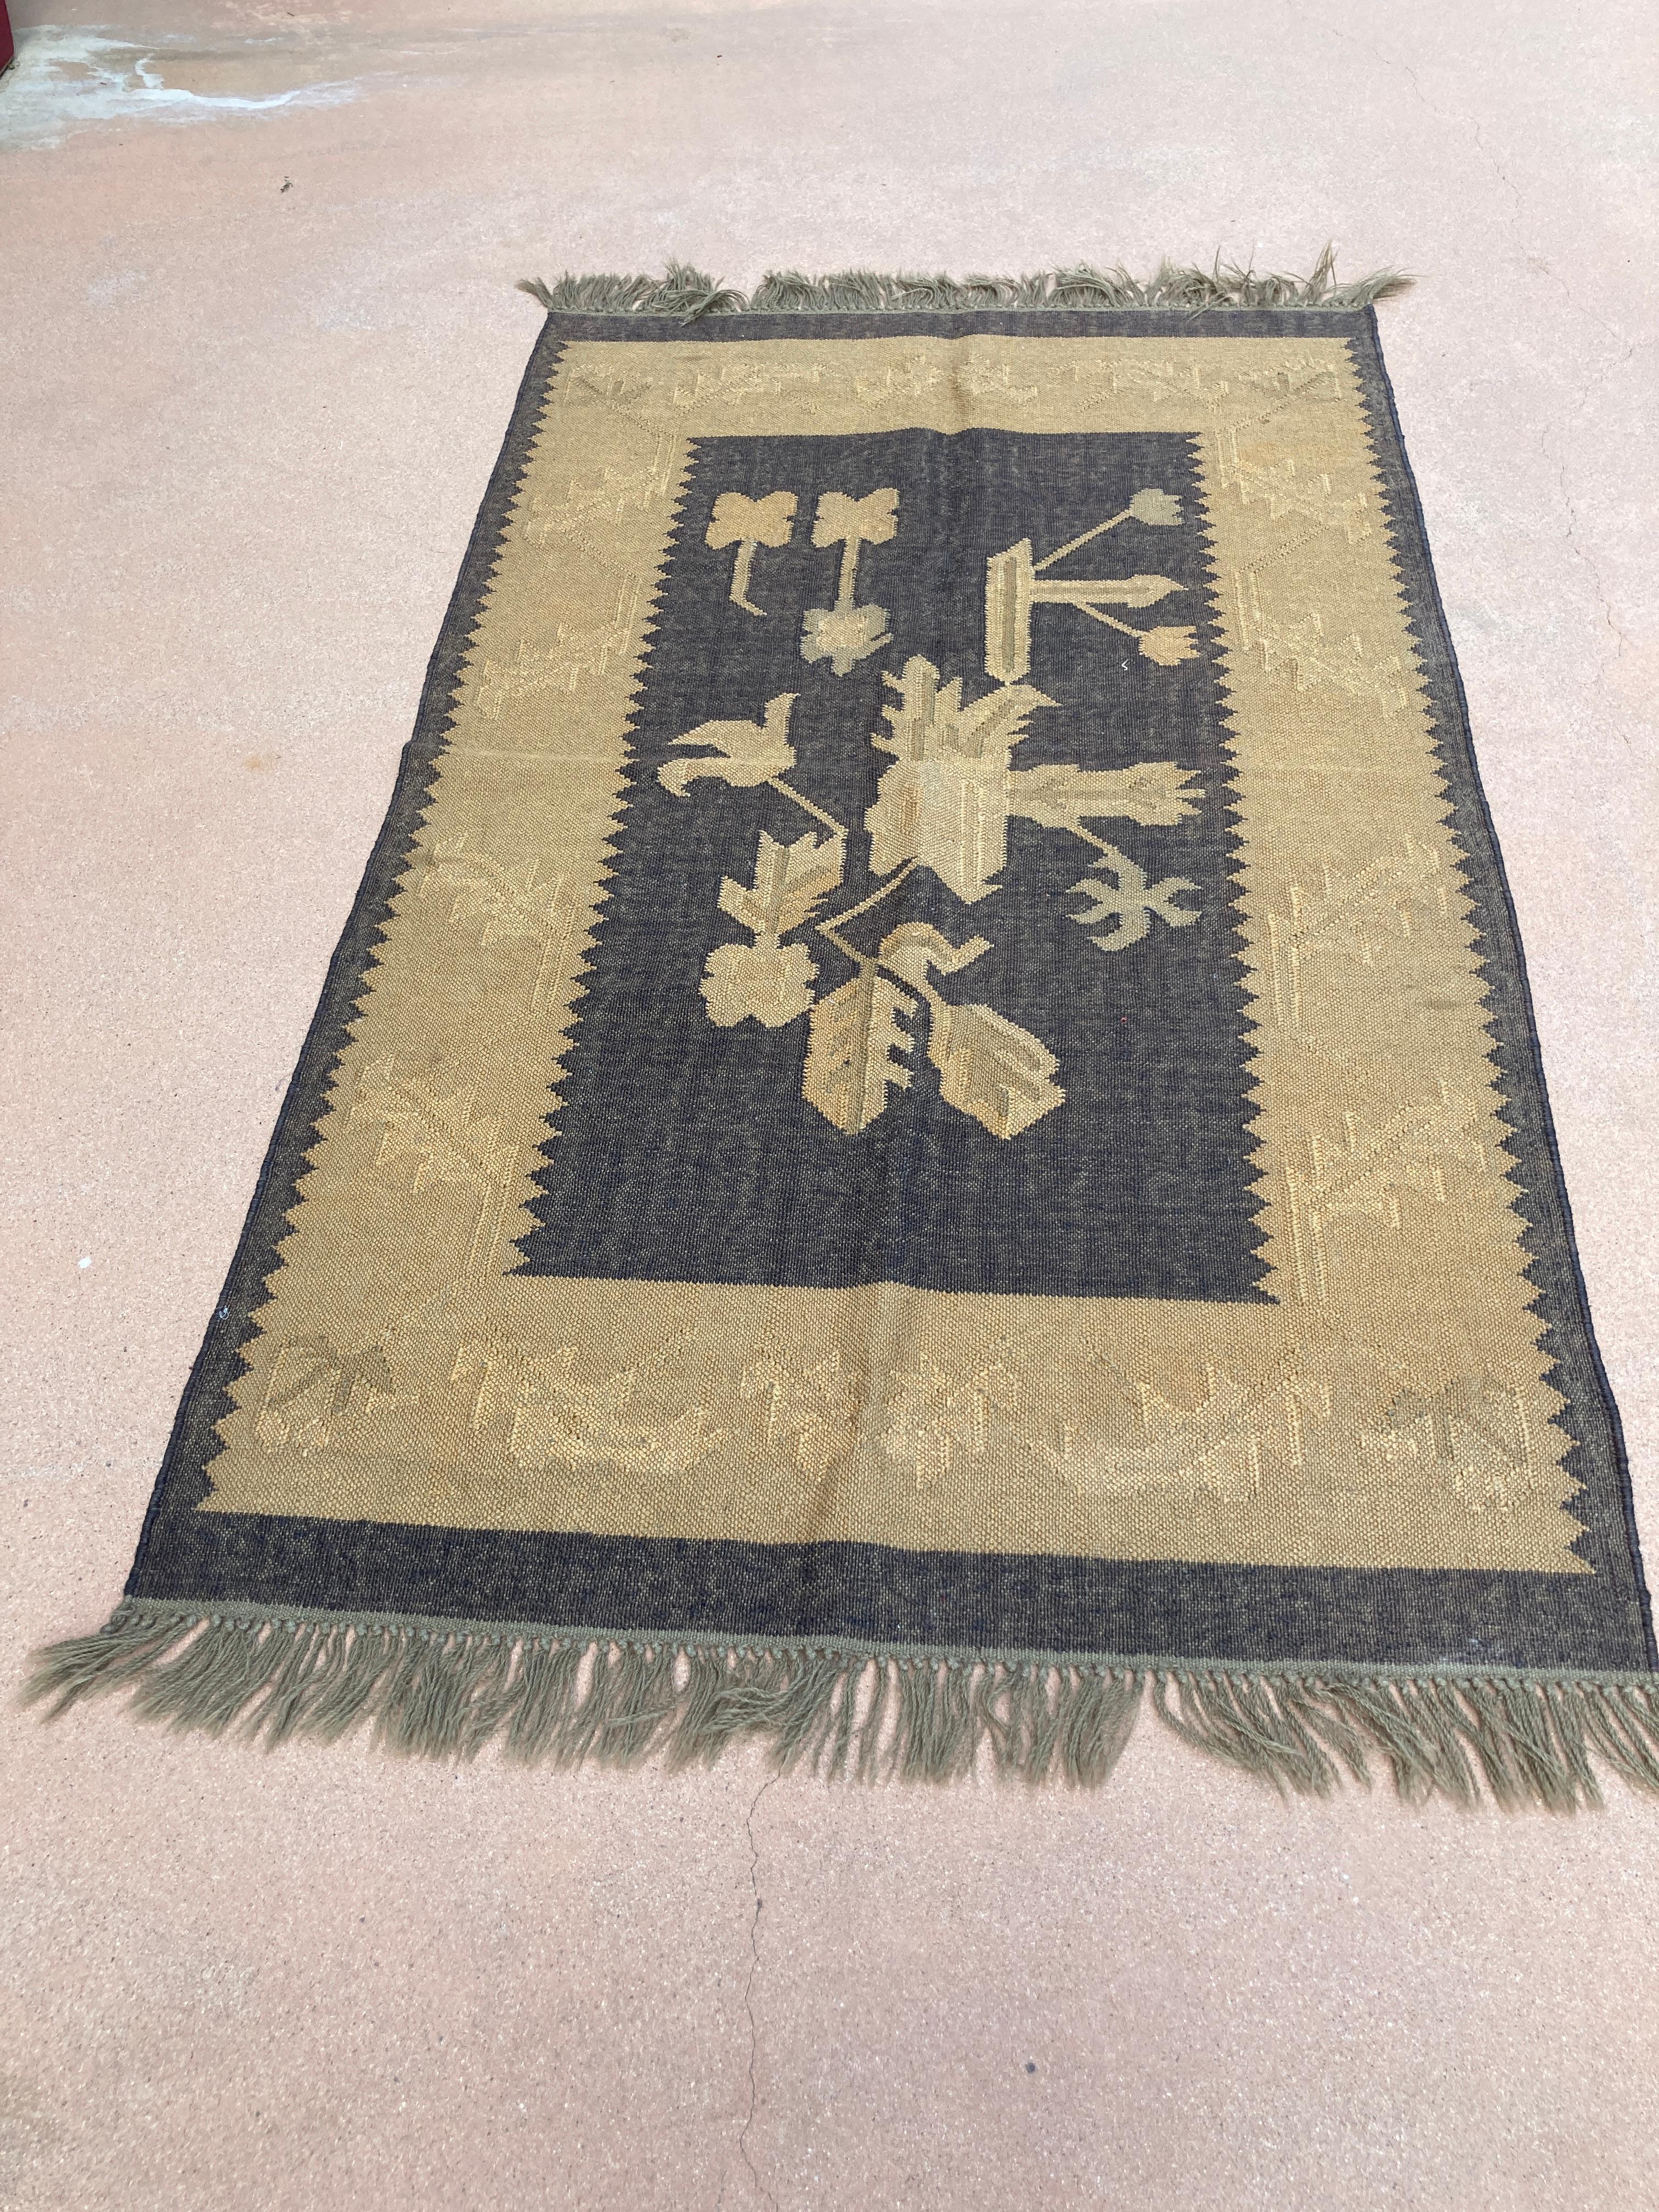 Vintage kleinen ethnischen Teppich.Handgefertigte südasiatischen Stammes-Teppich handgewebt mit floralen und geometrischen designs.This Teppich ist aus handgesponnener Wolle mit pflanzlichen Farbstoffen gefärbt.Great im Flur oder Bad zu